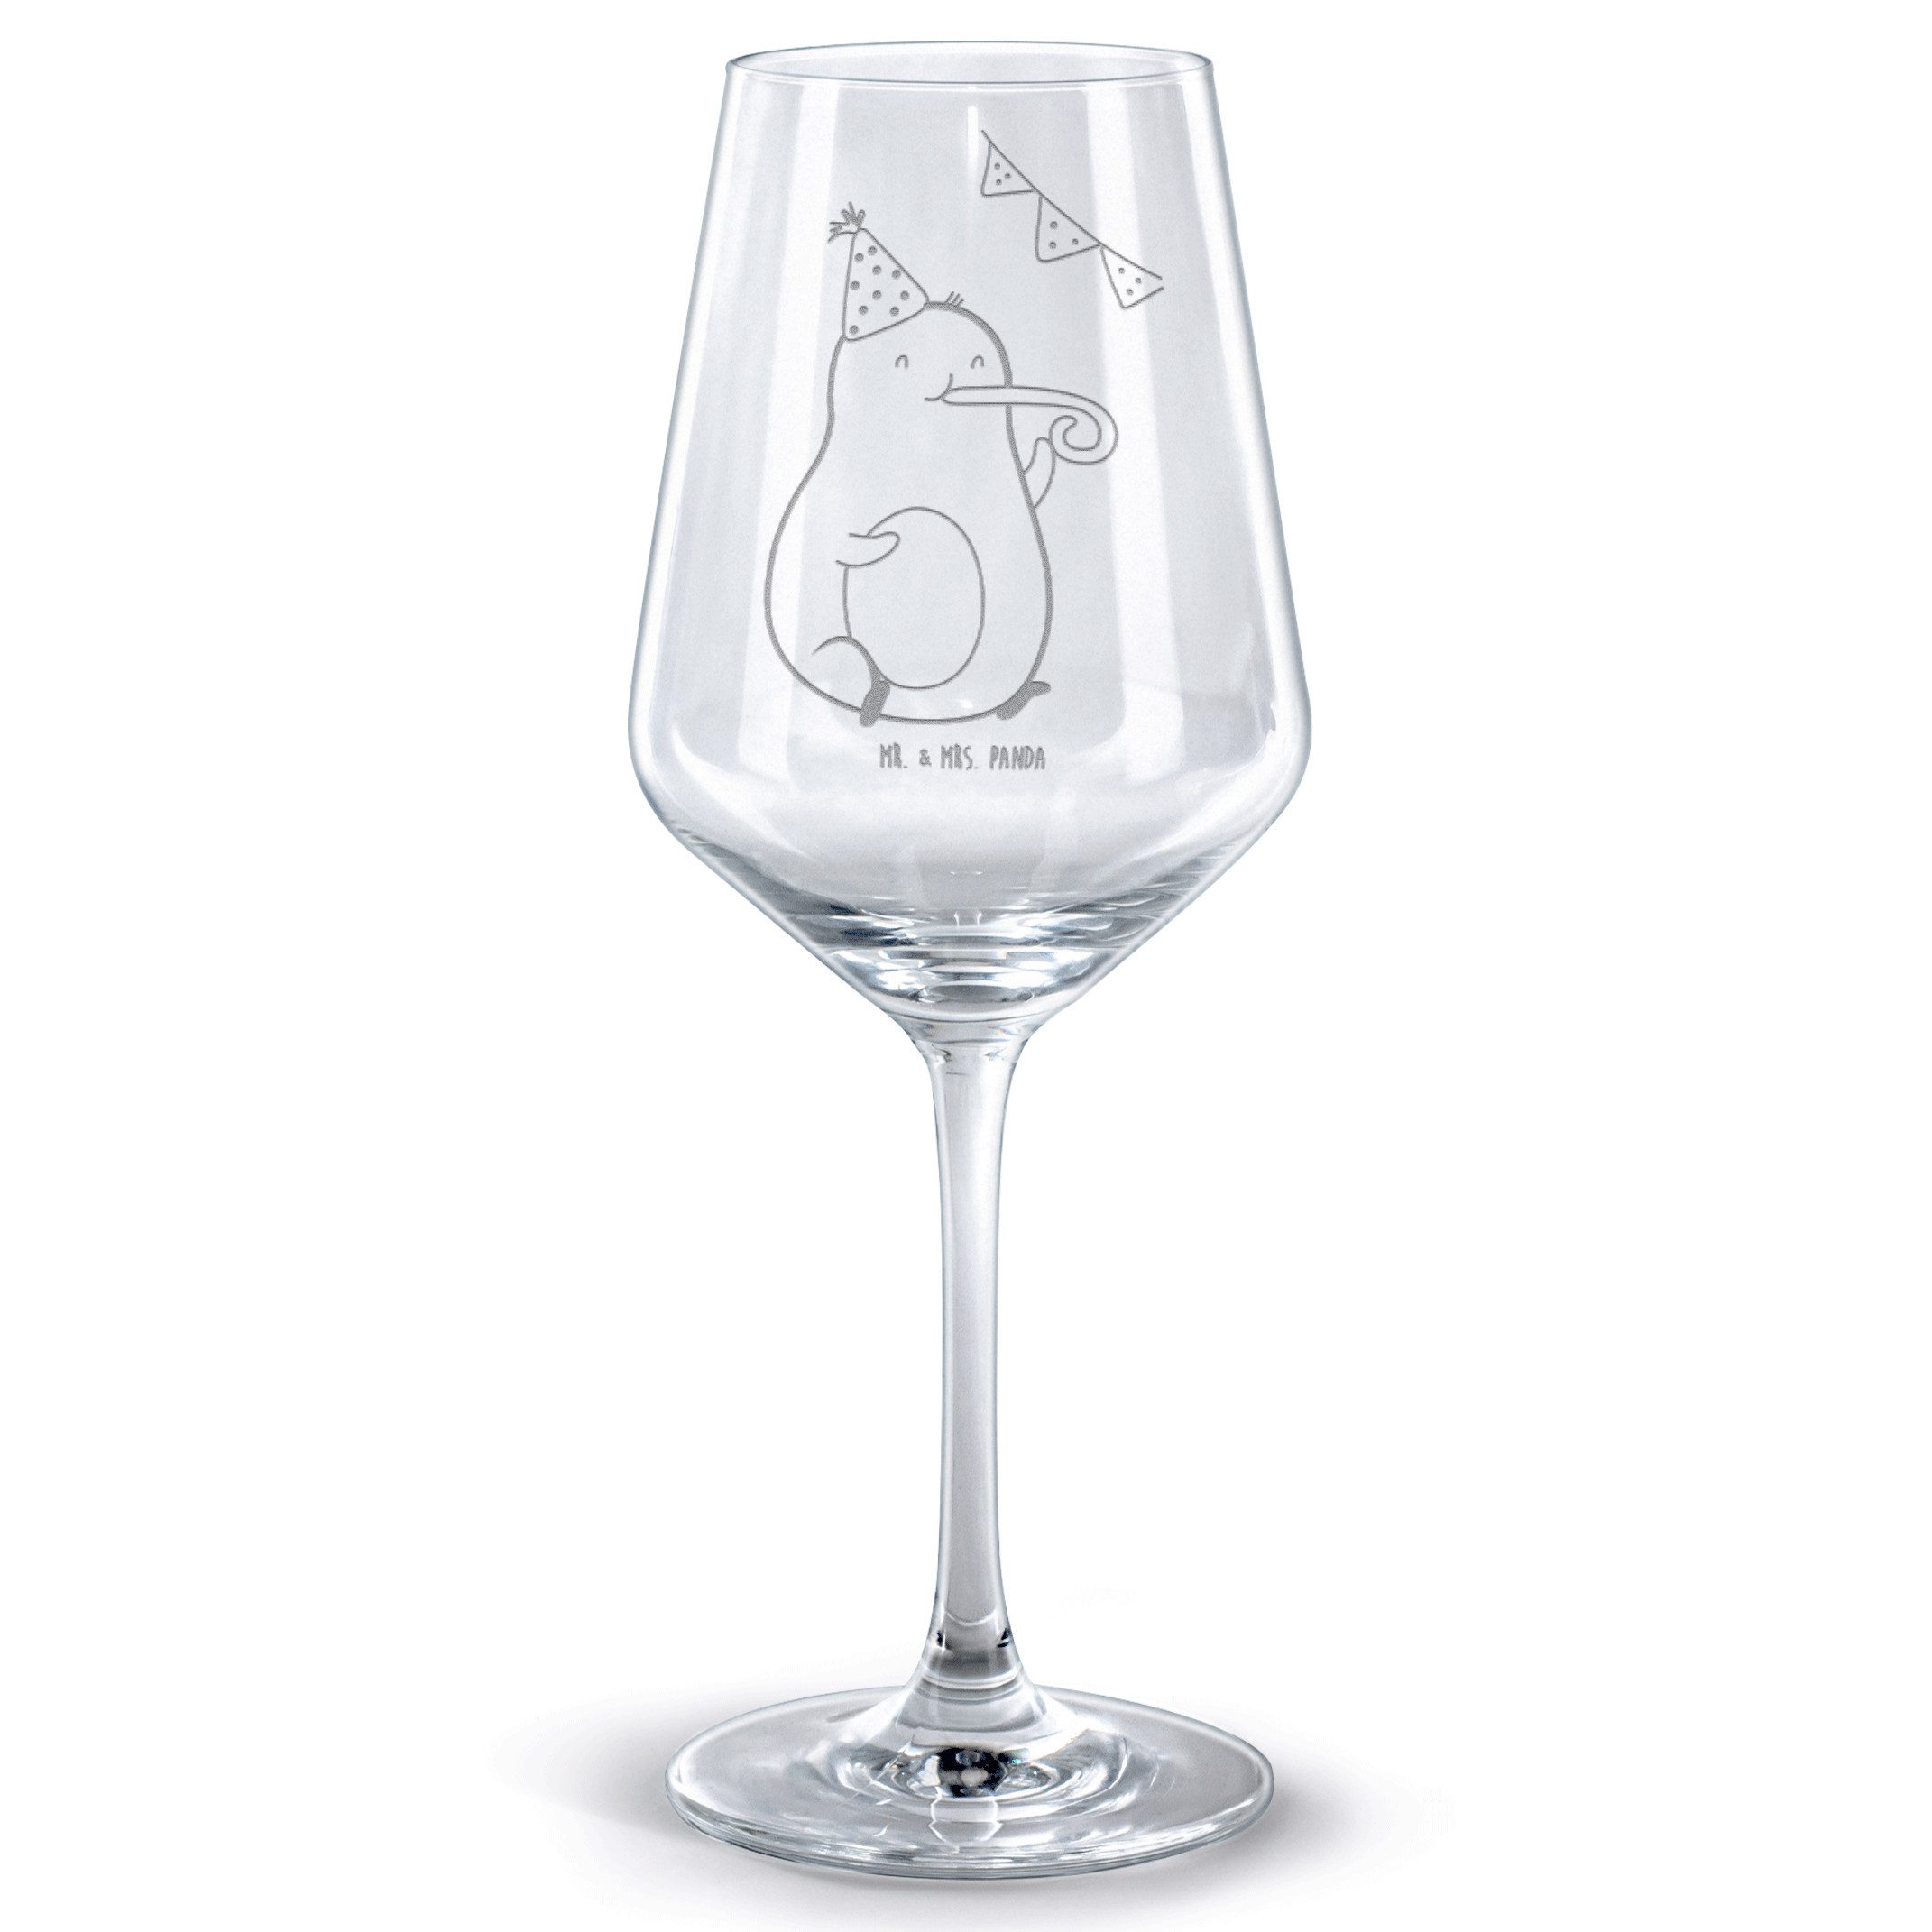 Mr. & Mrs. Panda Rotweinglas Avocado Geburtstag - Transparent - Geschenk, Gesund, Rotweinglas, Wei, Premium Glas, Spülmaschinenfest